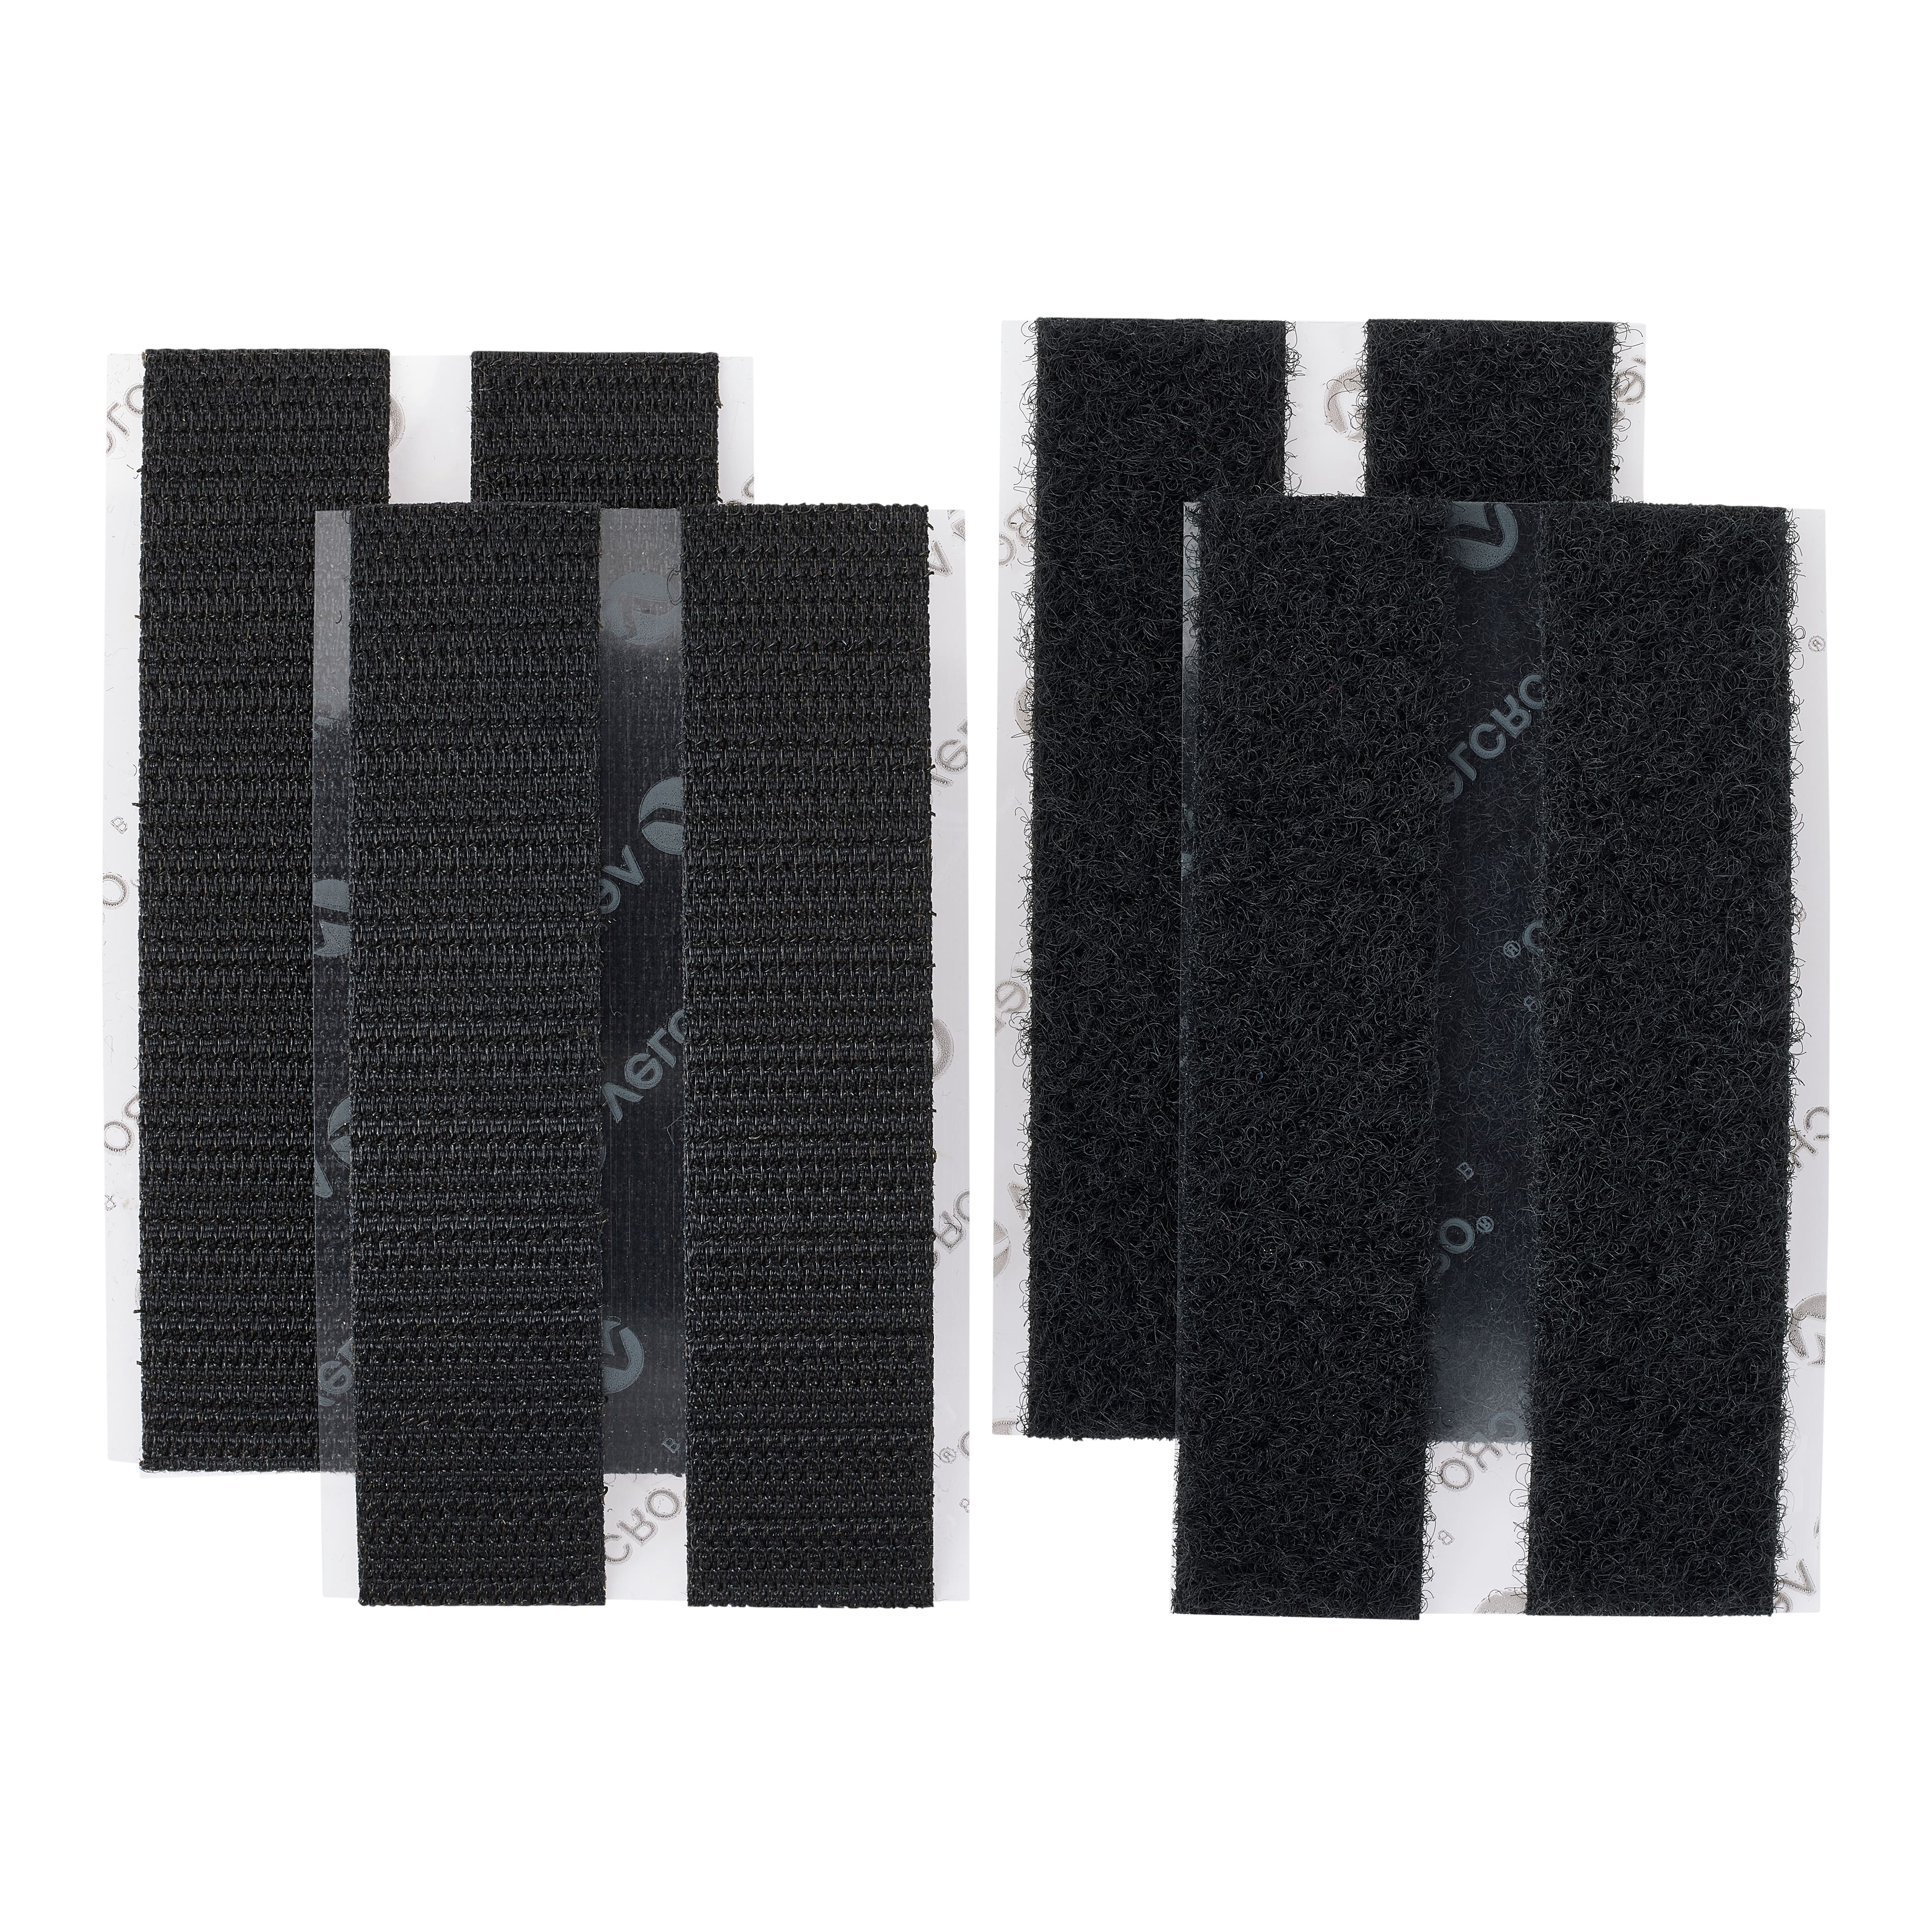 VELCRO Brand Sticky Back - 3.5 in. x 0.75 in. Strips 4 Sets - Black